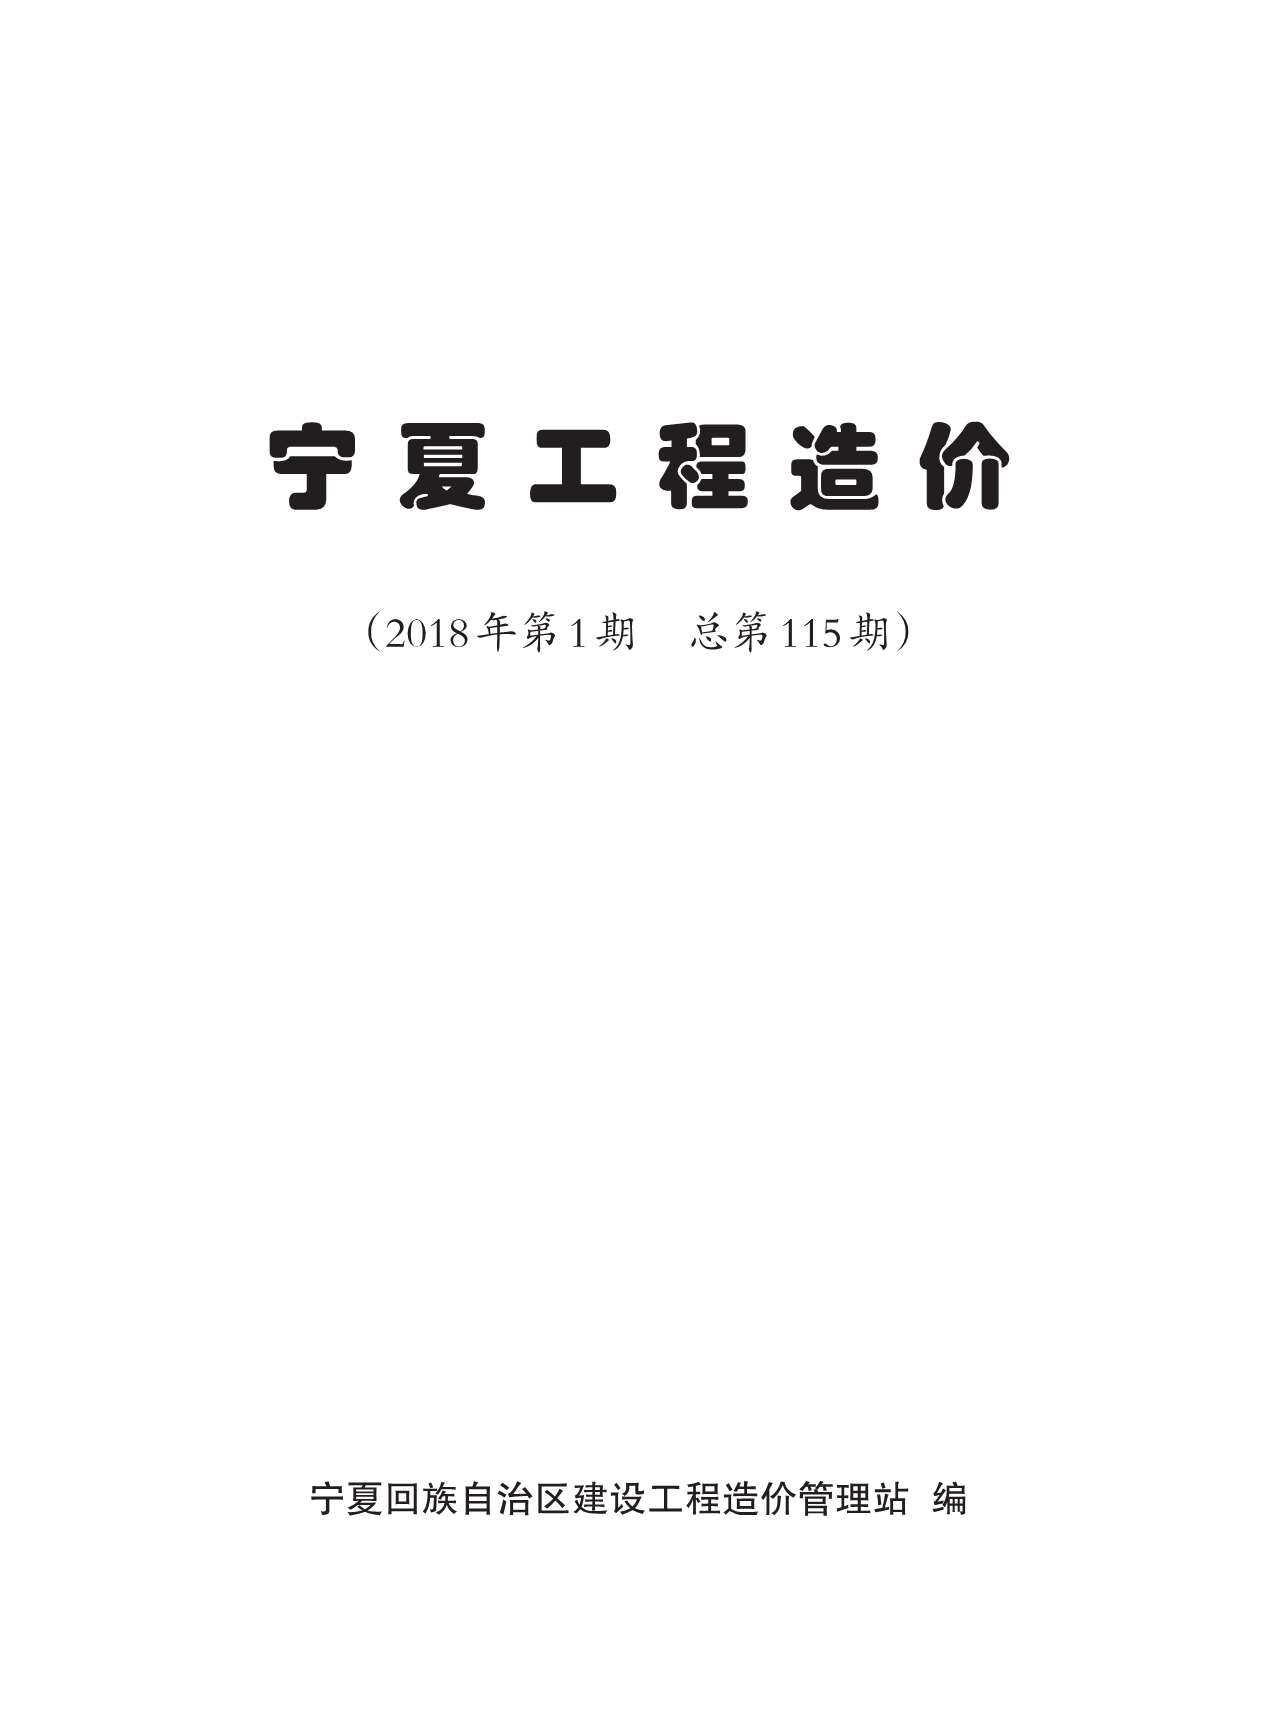 宁夏自治区2018年1月工程造价信息期刊封面